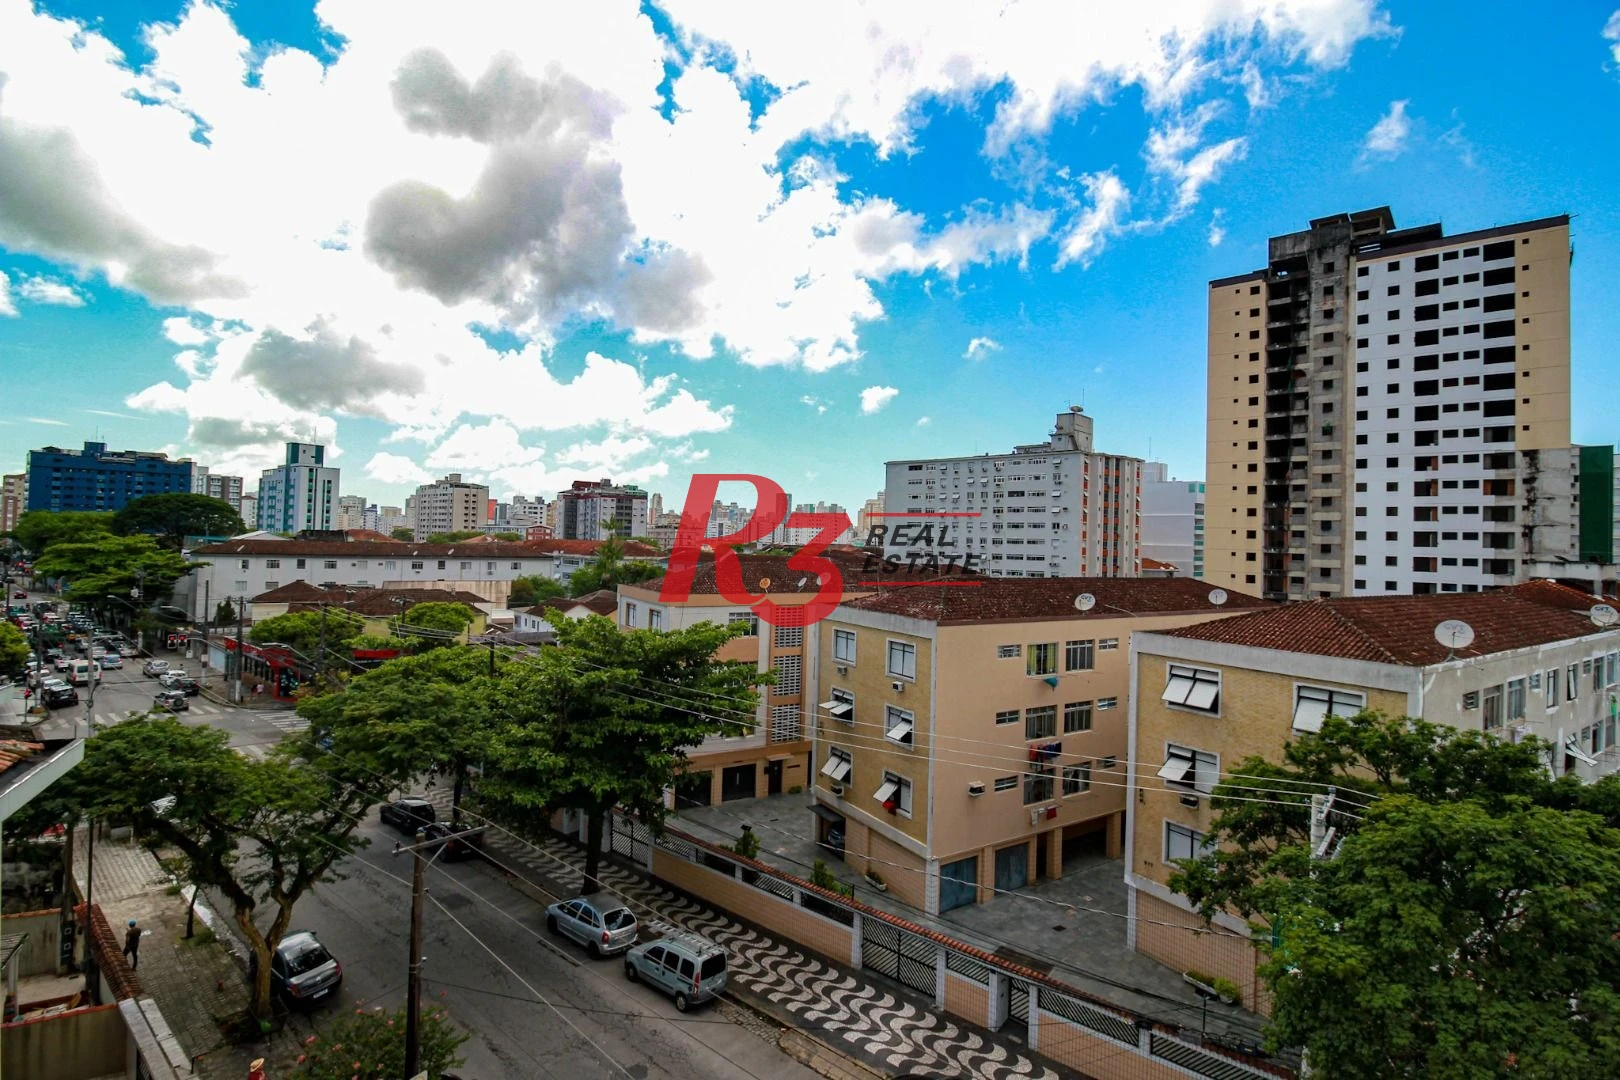 Apartamento com 2 dormitórios à venda, 69 m² por R$ 572.000,00 - Marapé - Santos/SP